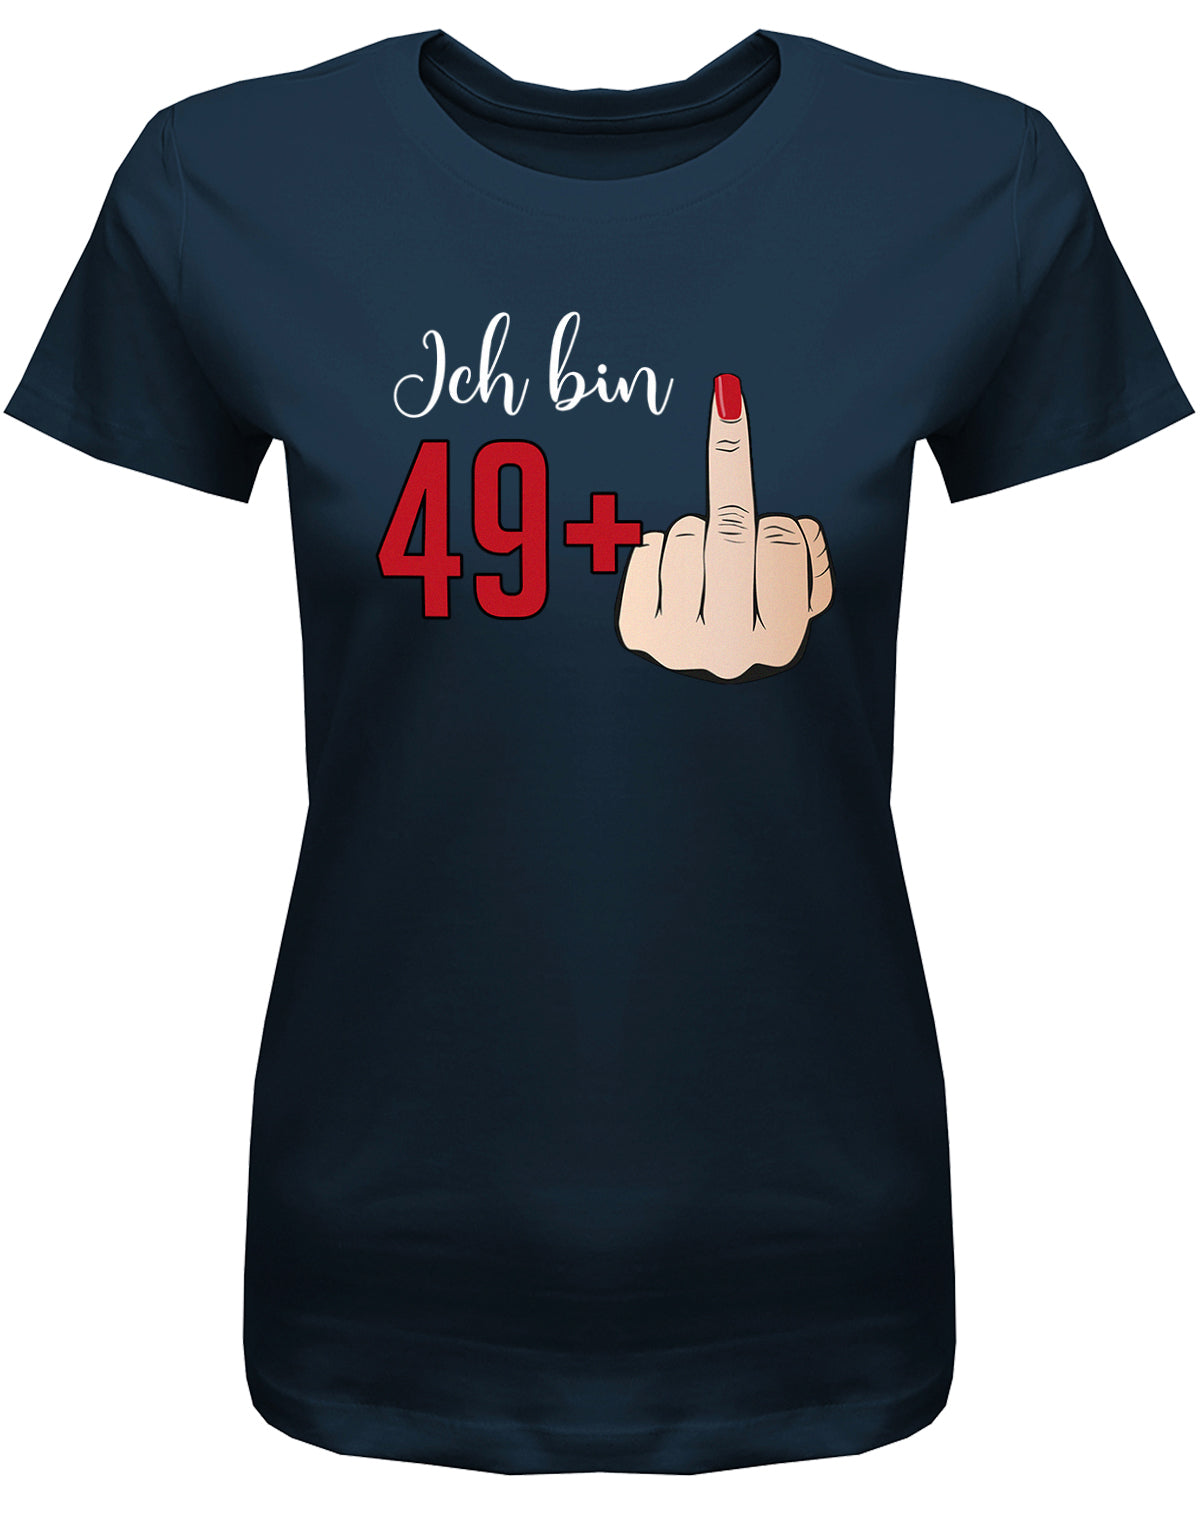 Lustiges T-Shirt zum 50 Geburtstag für die Frau Bedruckt mit Ich bin 49+ Stinkefinger. Navy